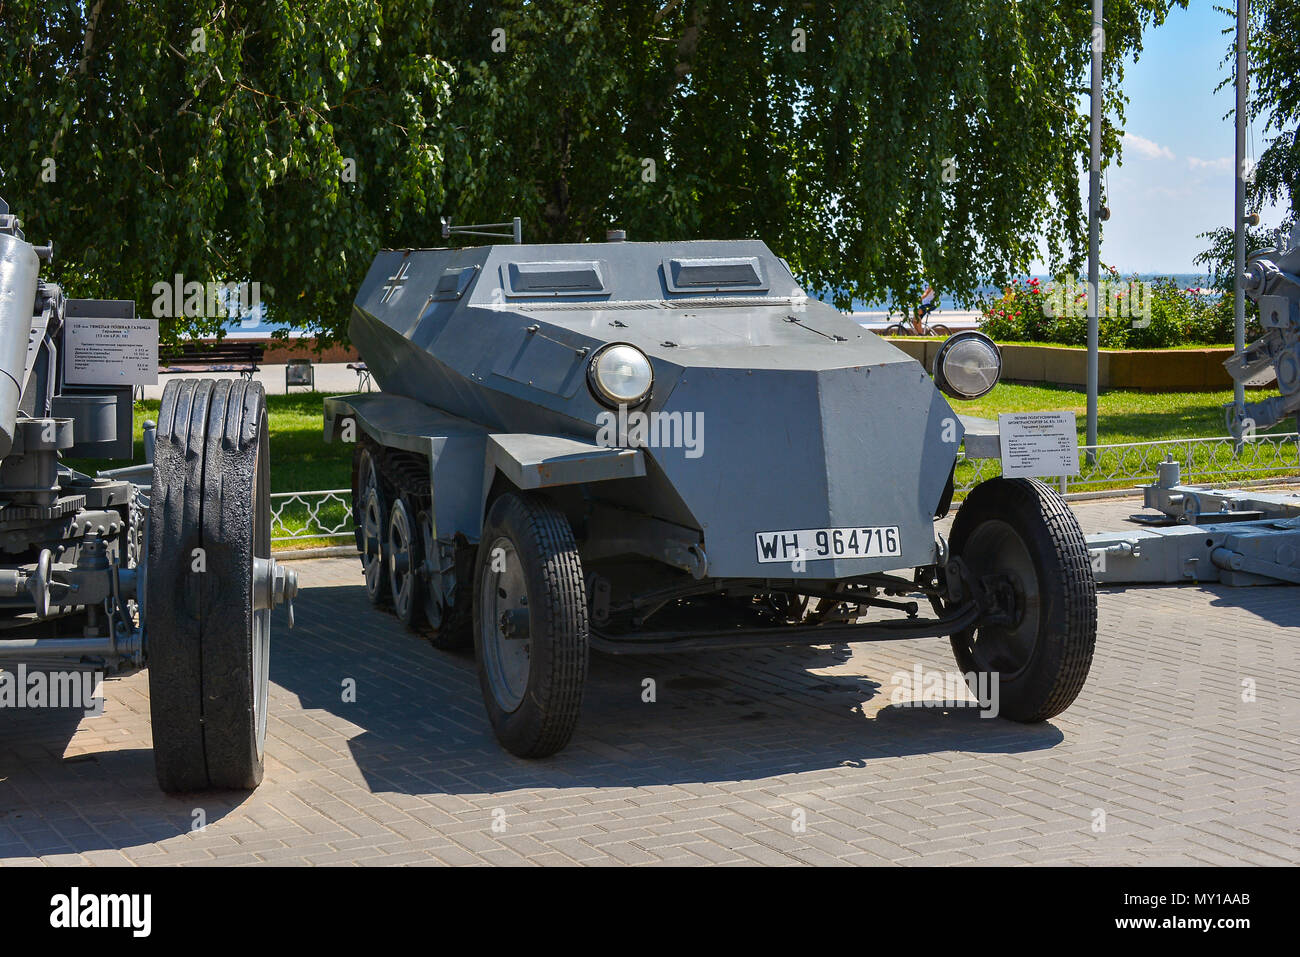 Rusia, Volgogrado, 12 de mayo de 2018 Exposición de equipo militar de la Segunda Guerra Mundial Foto de stock